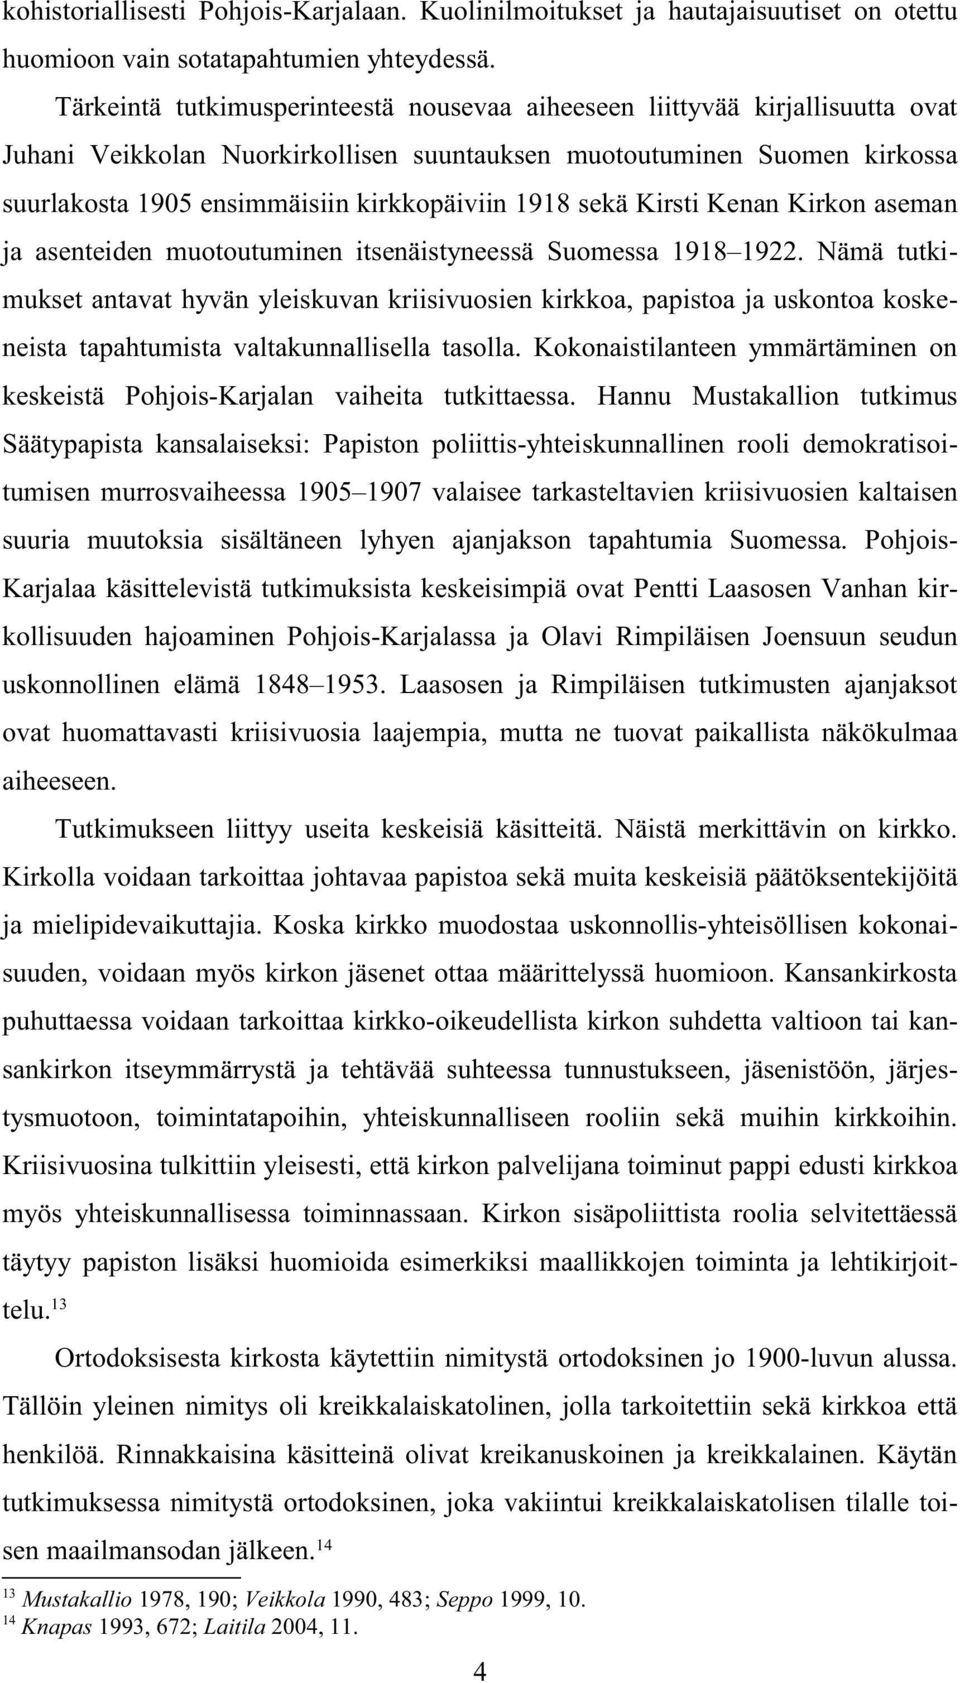 Tärkeintä tutkimusperinteestä nousevaa aiheeseen liittyvää kirjallisuutta ovat Juhani Veikkolan Nuorkirkollisen suuntauksen muotoutuminen Suomen kirkossa suurlakosta 1905 ensimmäisiin kirkkopäiviin